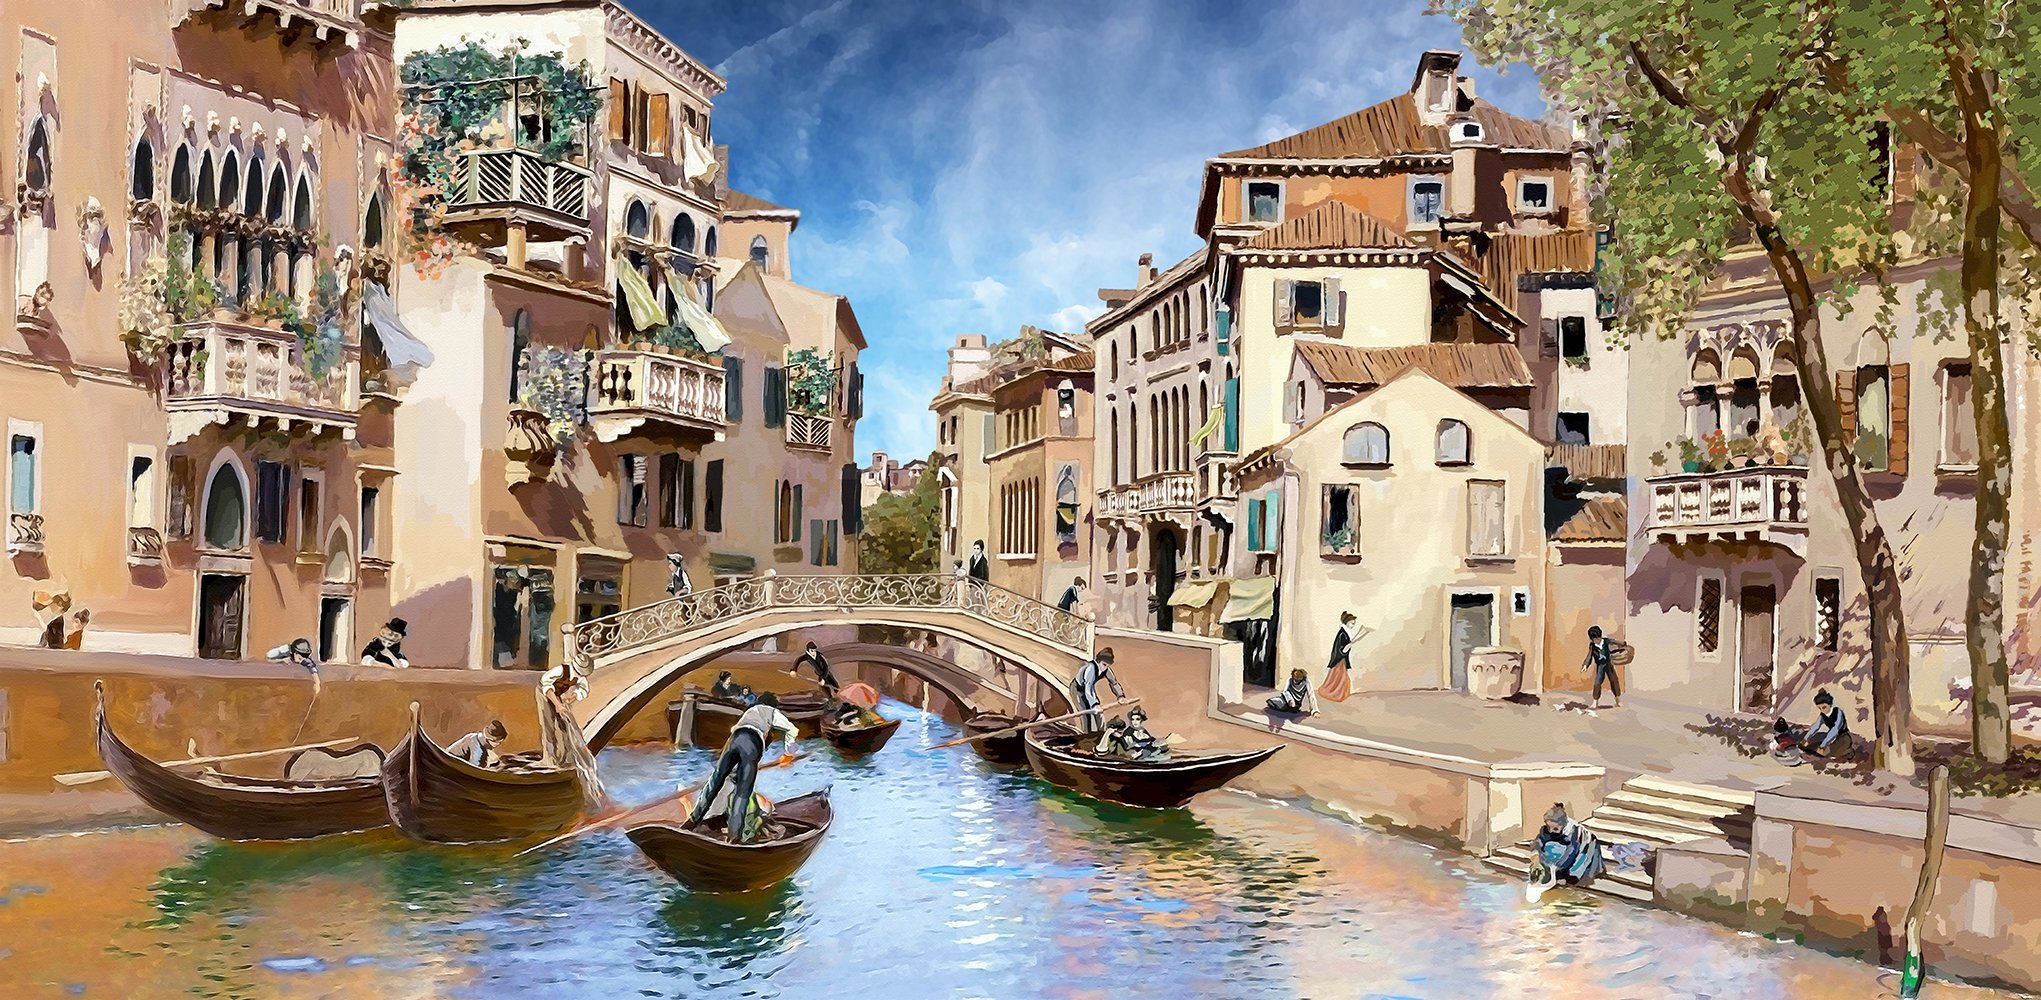 Фотообои Канал Венеции живопись  300х147 см из коллекции Divino Decor